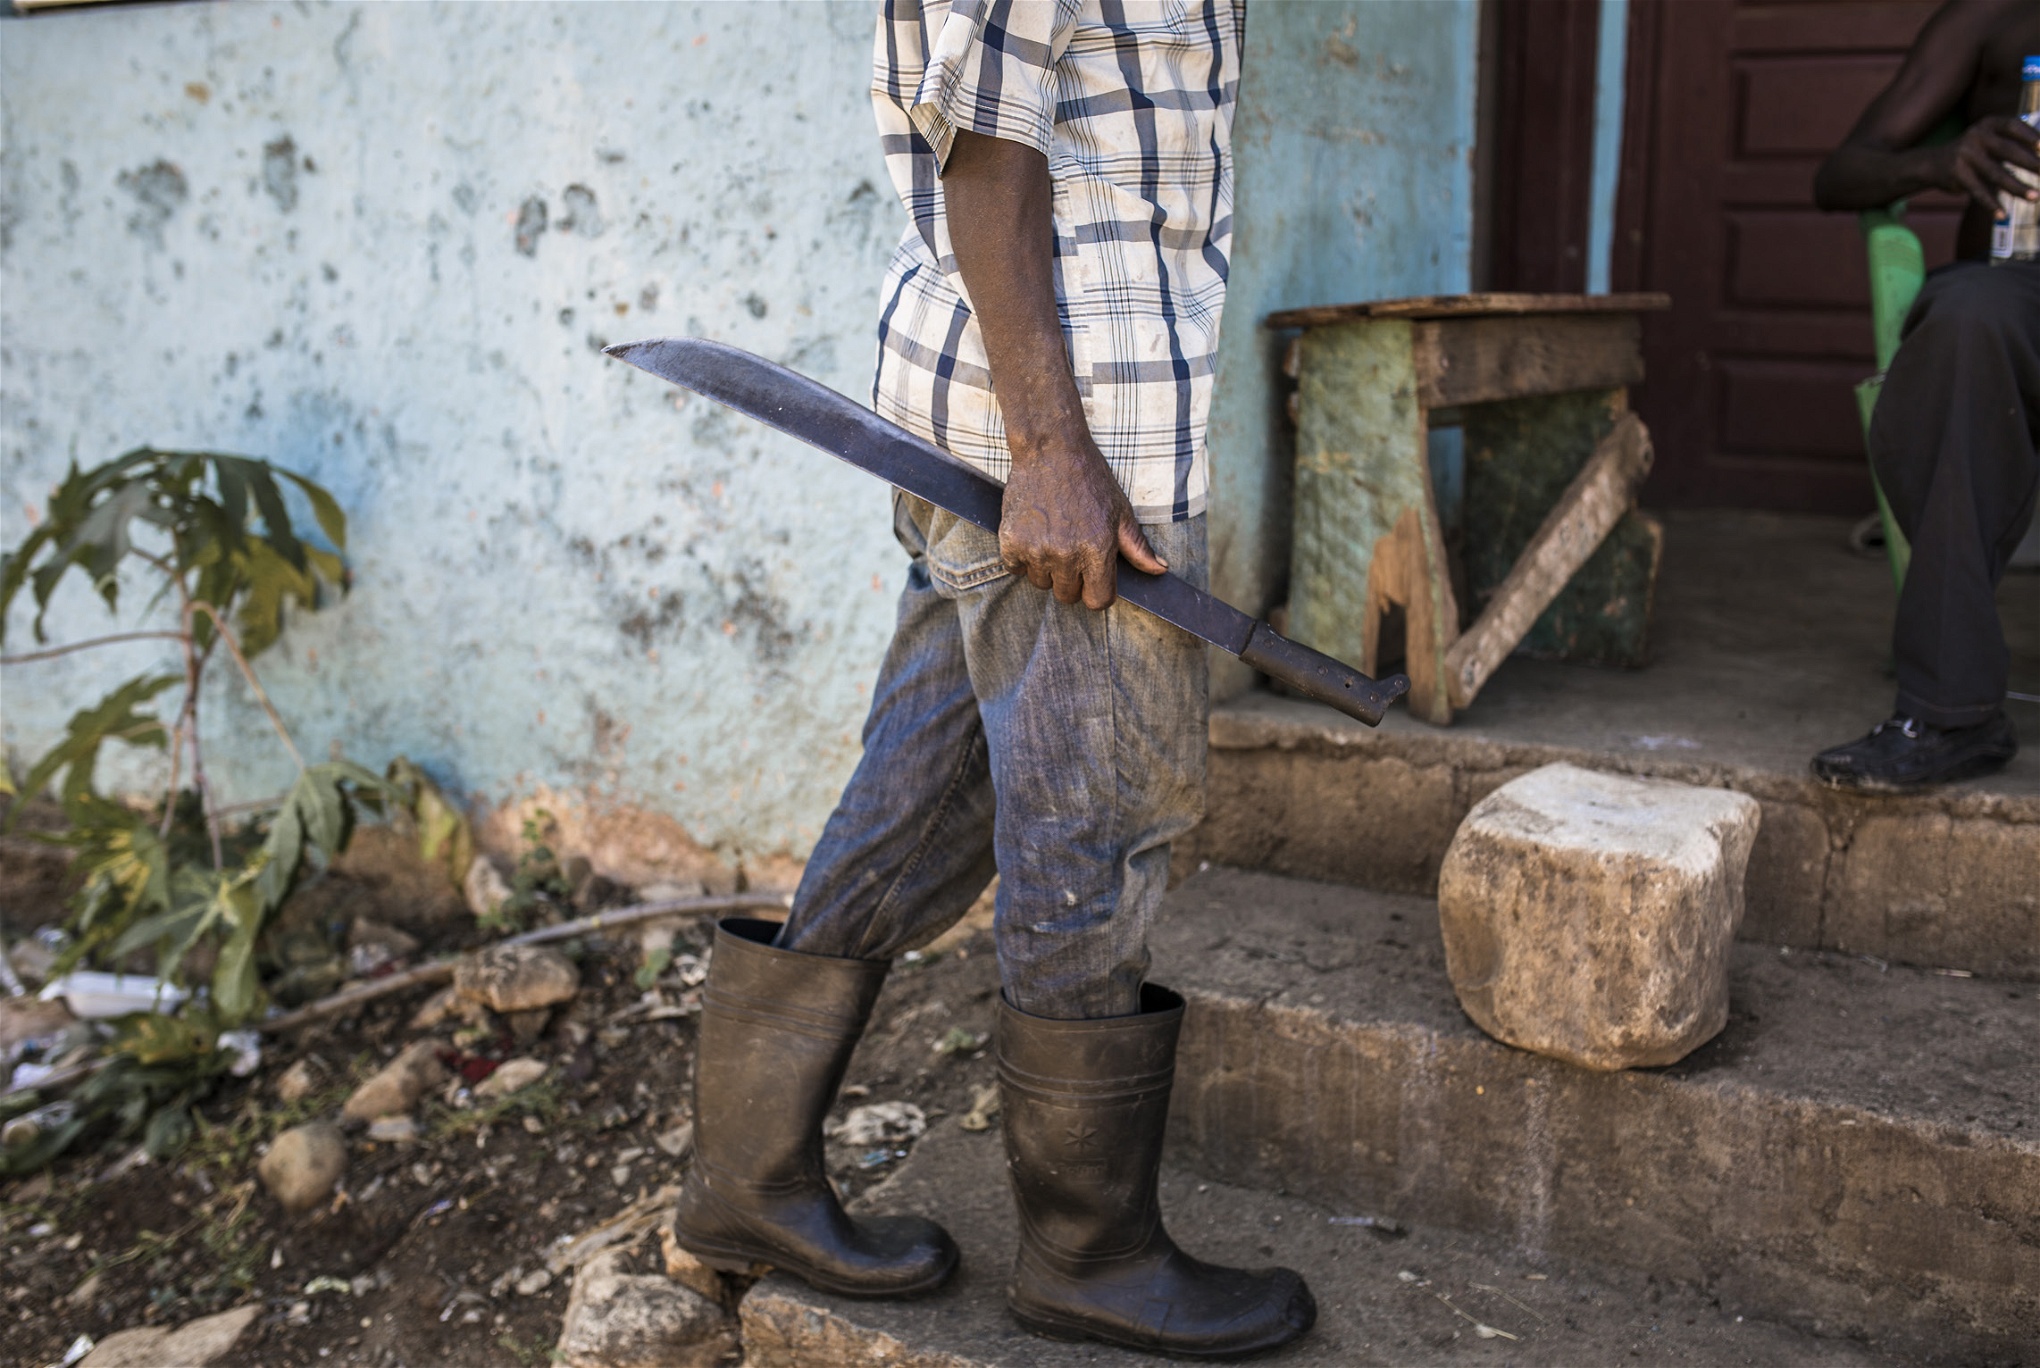 Arbetet på sockerrörsfälten är hårt och utan arbets- eller uppehållstillstånd har de
haitiska arbetarna få rättigheter. Lönerna är låga och det händer att de i stället får sin betalning i matkuponger som bara kan lösas ut i arbetsköparnas egna butiker.